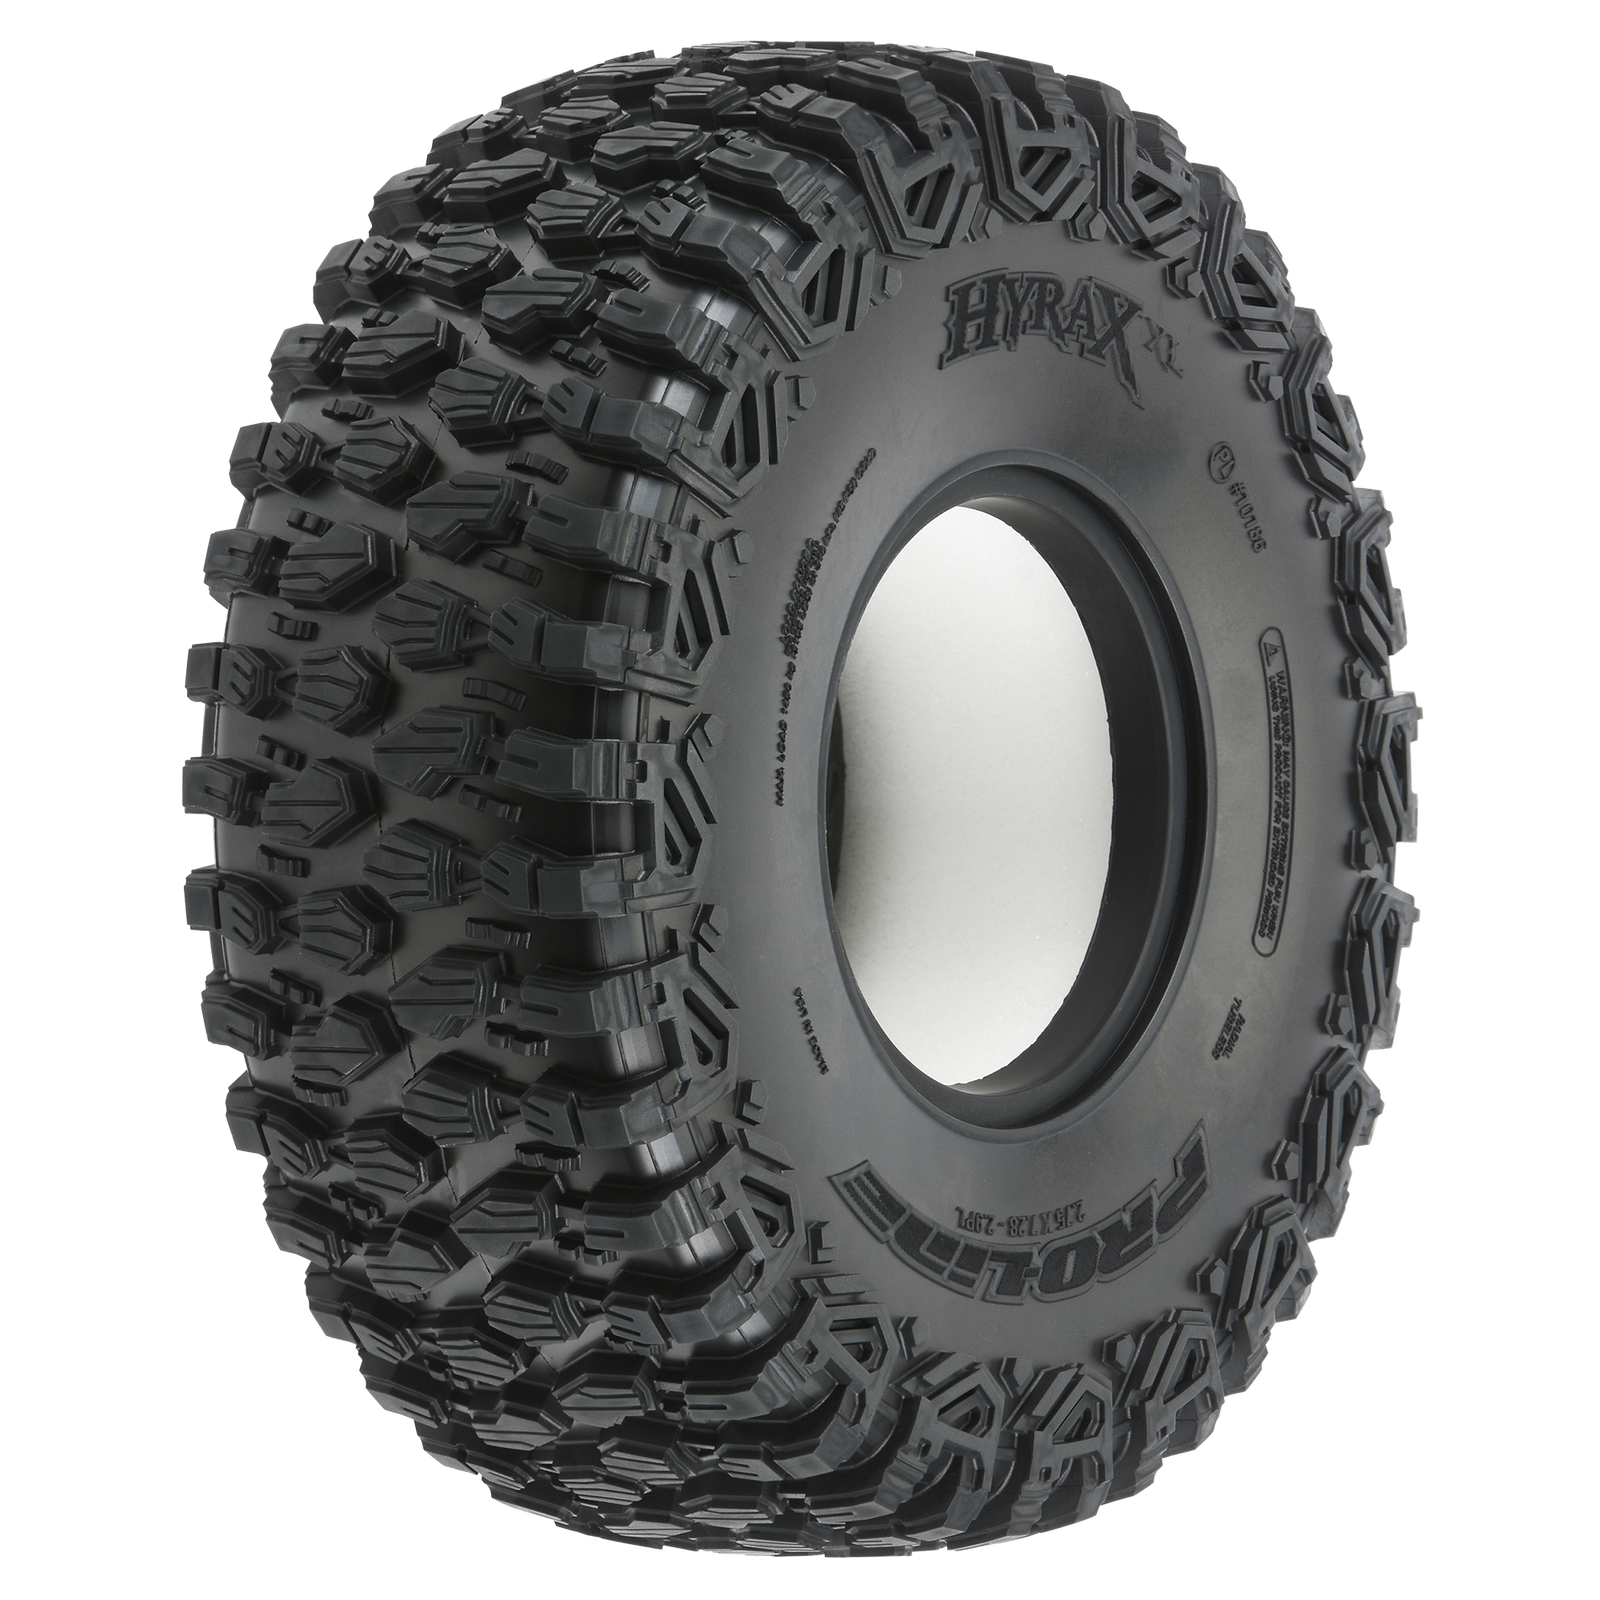 Neumáticos Pro-Line 1/6 Hyrax XL Delanteros/Traseros Todo Terreno Losi Super Rock Rey (2)- 